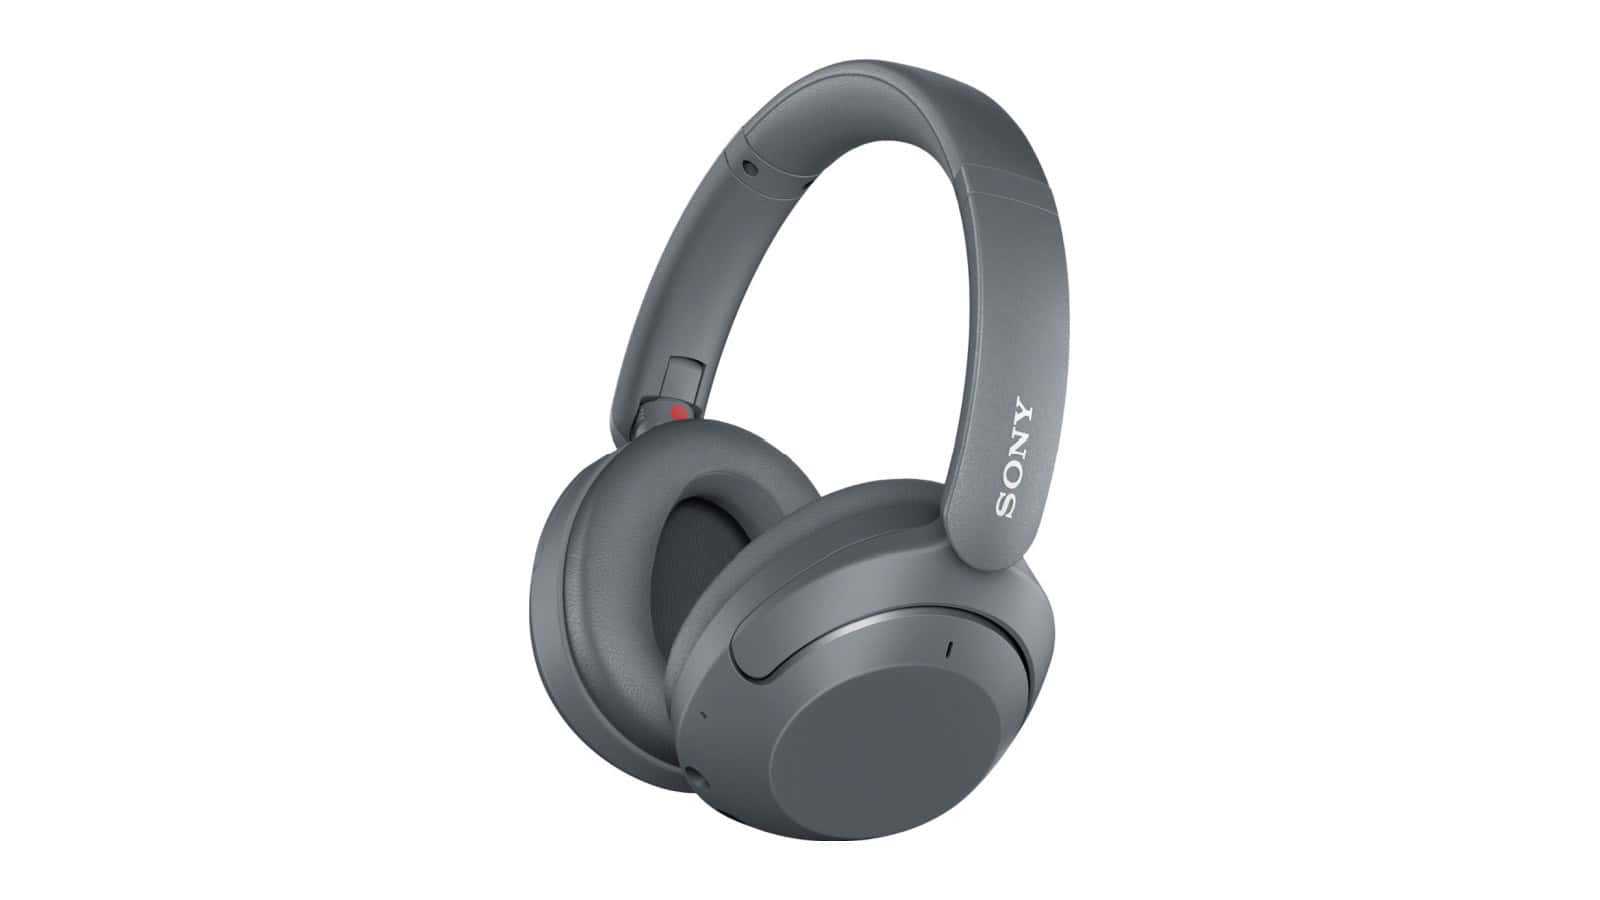 Obtenga estos auriculares Sony ANC por solo $ 150 ($ ¡100 de descuento!)